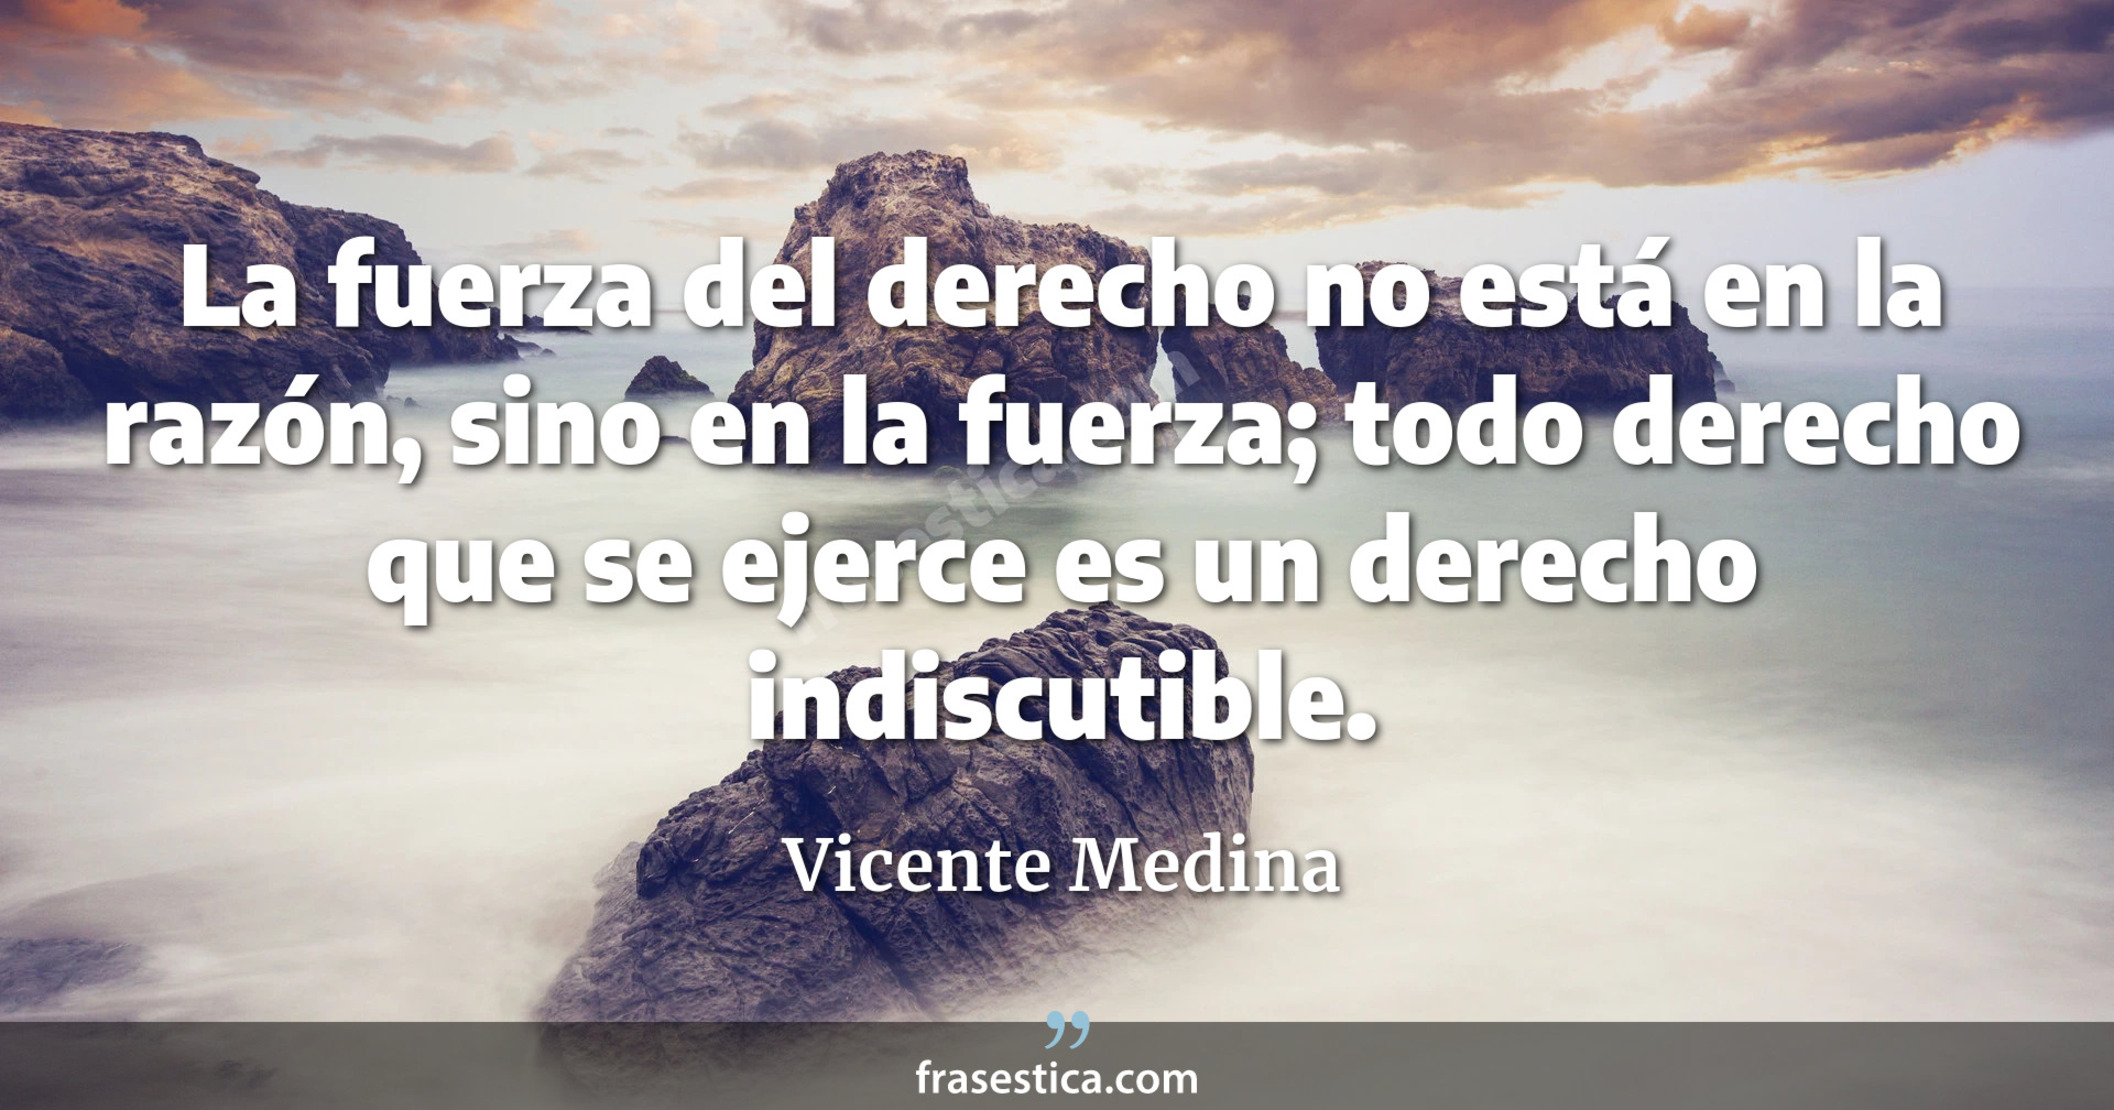 La fuerza del derecho no está en la razón, sino en la fuerza; todo derecho que se ejerce es un derecho indiscutible. - Vicente Medina